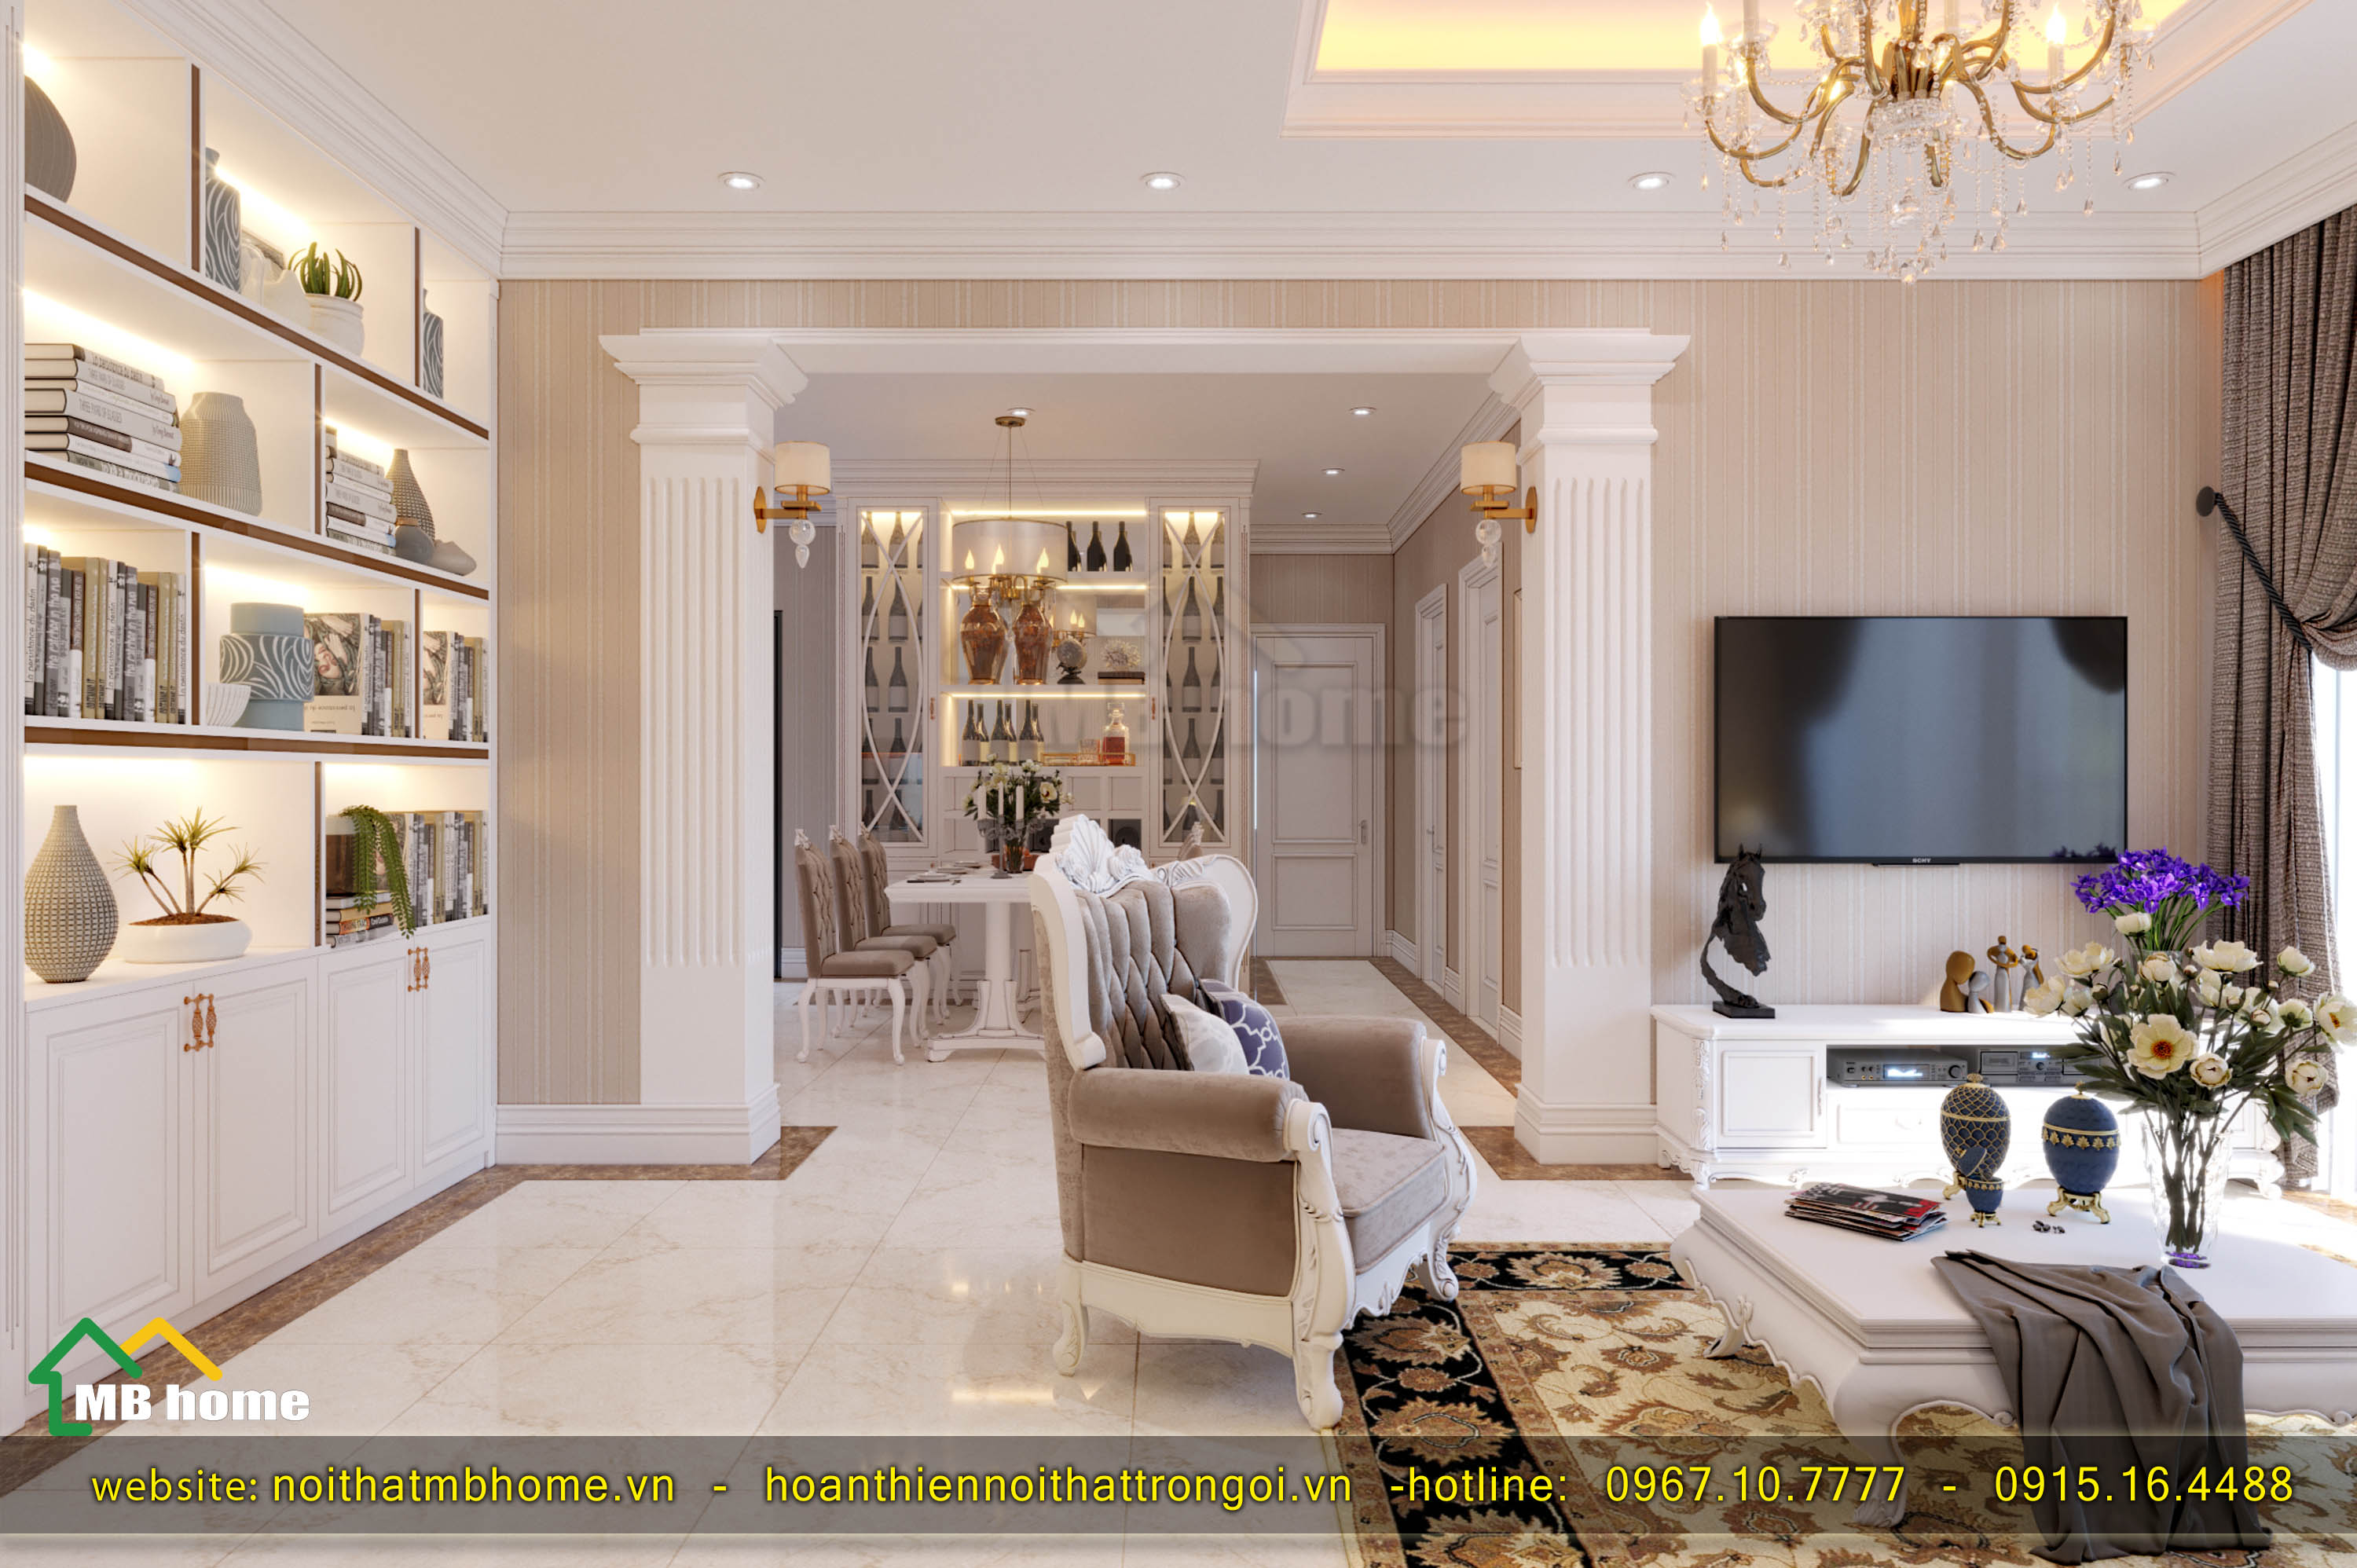 Nếu bạn đang tìm kiếm một kiểu thiết kế nội thất chung cư cổ điển tại Hà Nội, chúng tôi sẽ làm hài lòng bạn. Thiết kế của chúng tôi nhấn mạnh vào vẻ đẹp cổ điển hoàn hảo, tôn vinh nét đẹp của các căn hộ chung cư tại Hà Nội.